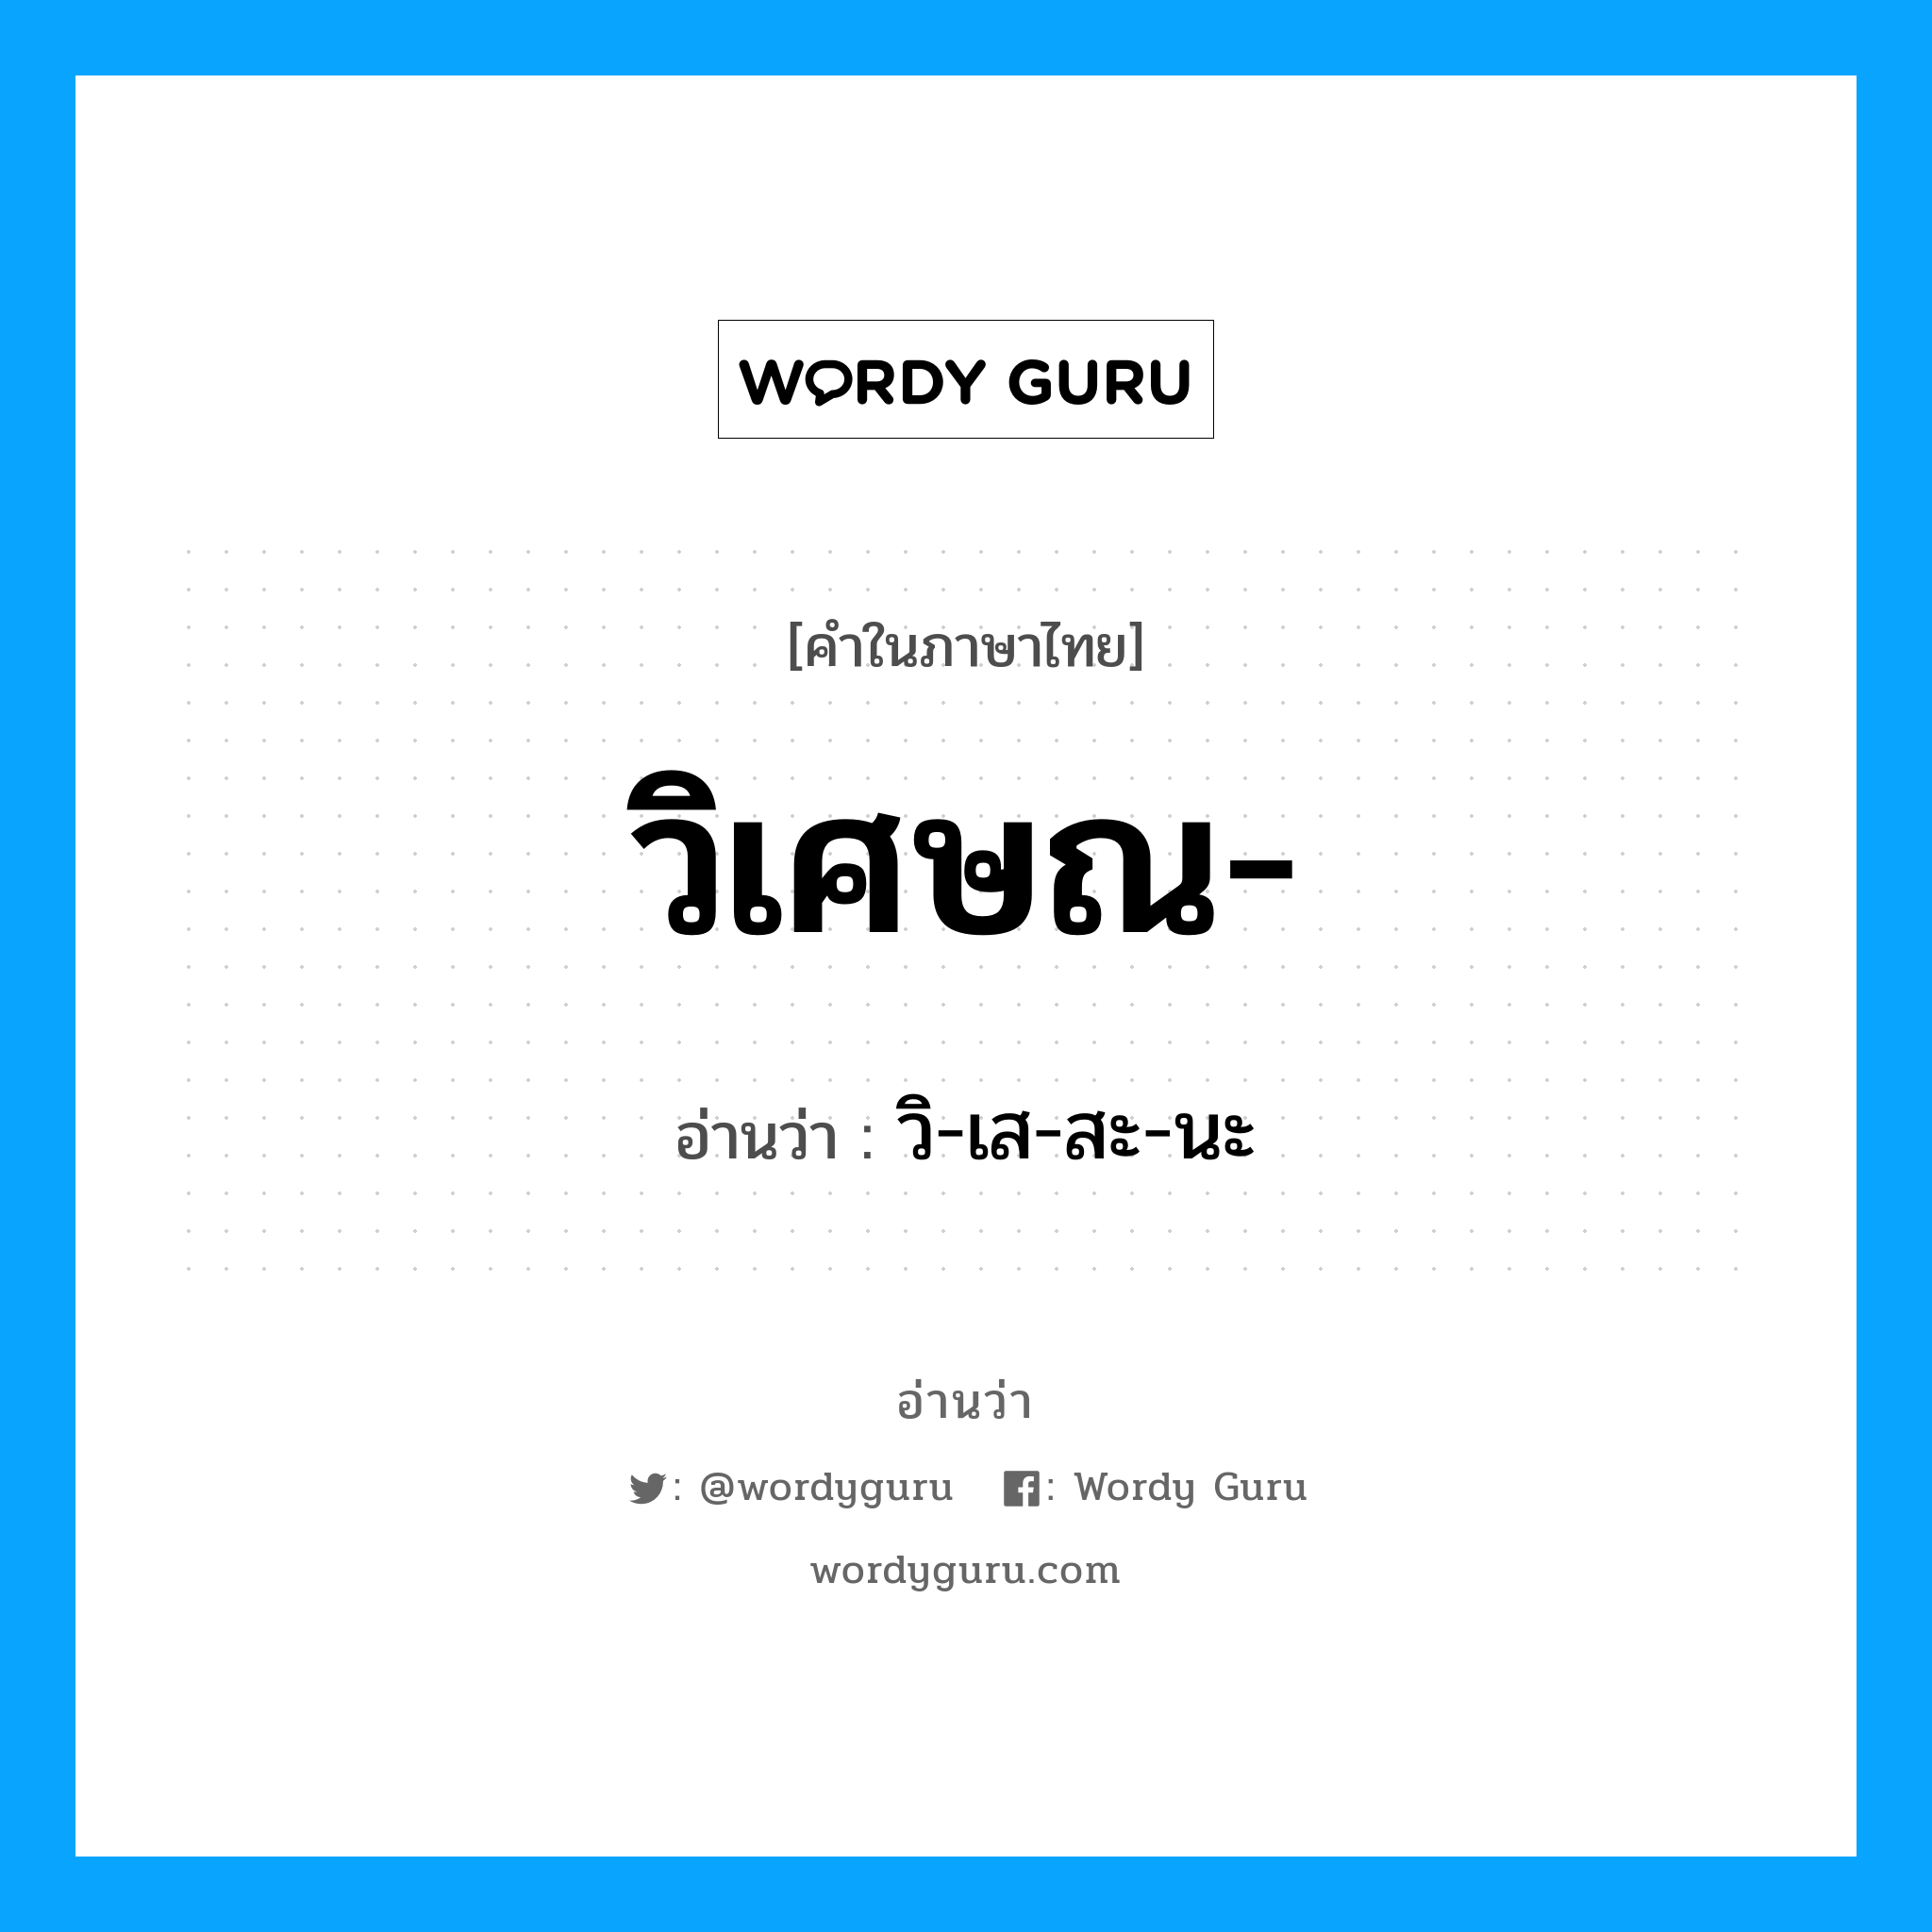 วิ-เส-สะ-นะ เป็นคำอ่านของคำไหน?, คำในภาษาไทย วิ-เส-สะ-นะ อ่านว่า วิเศษณ-